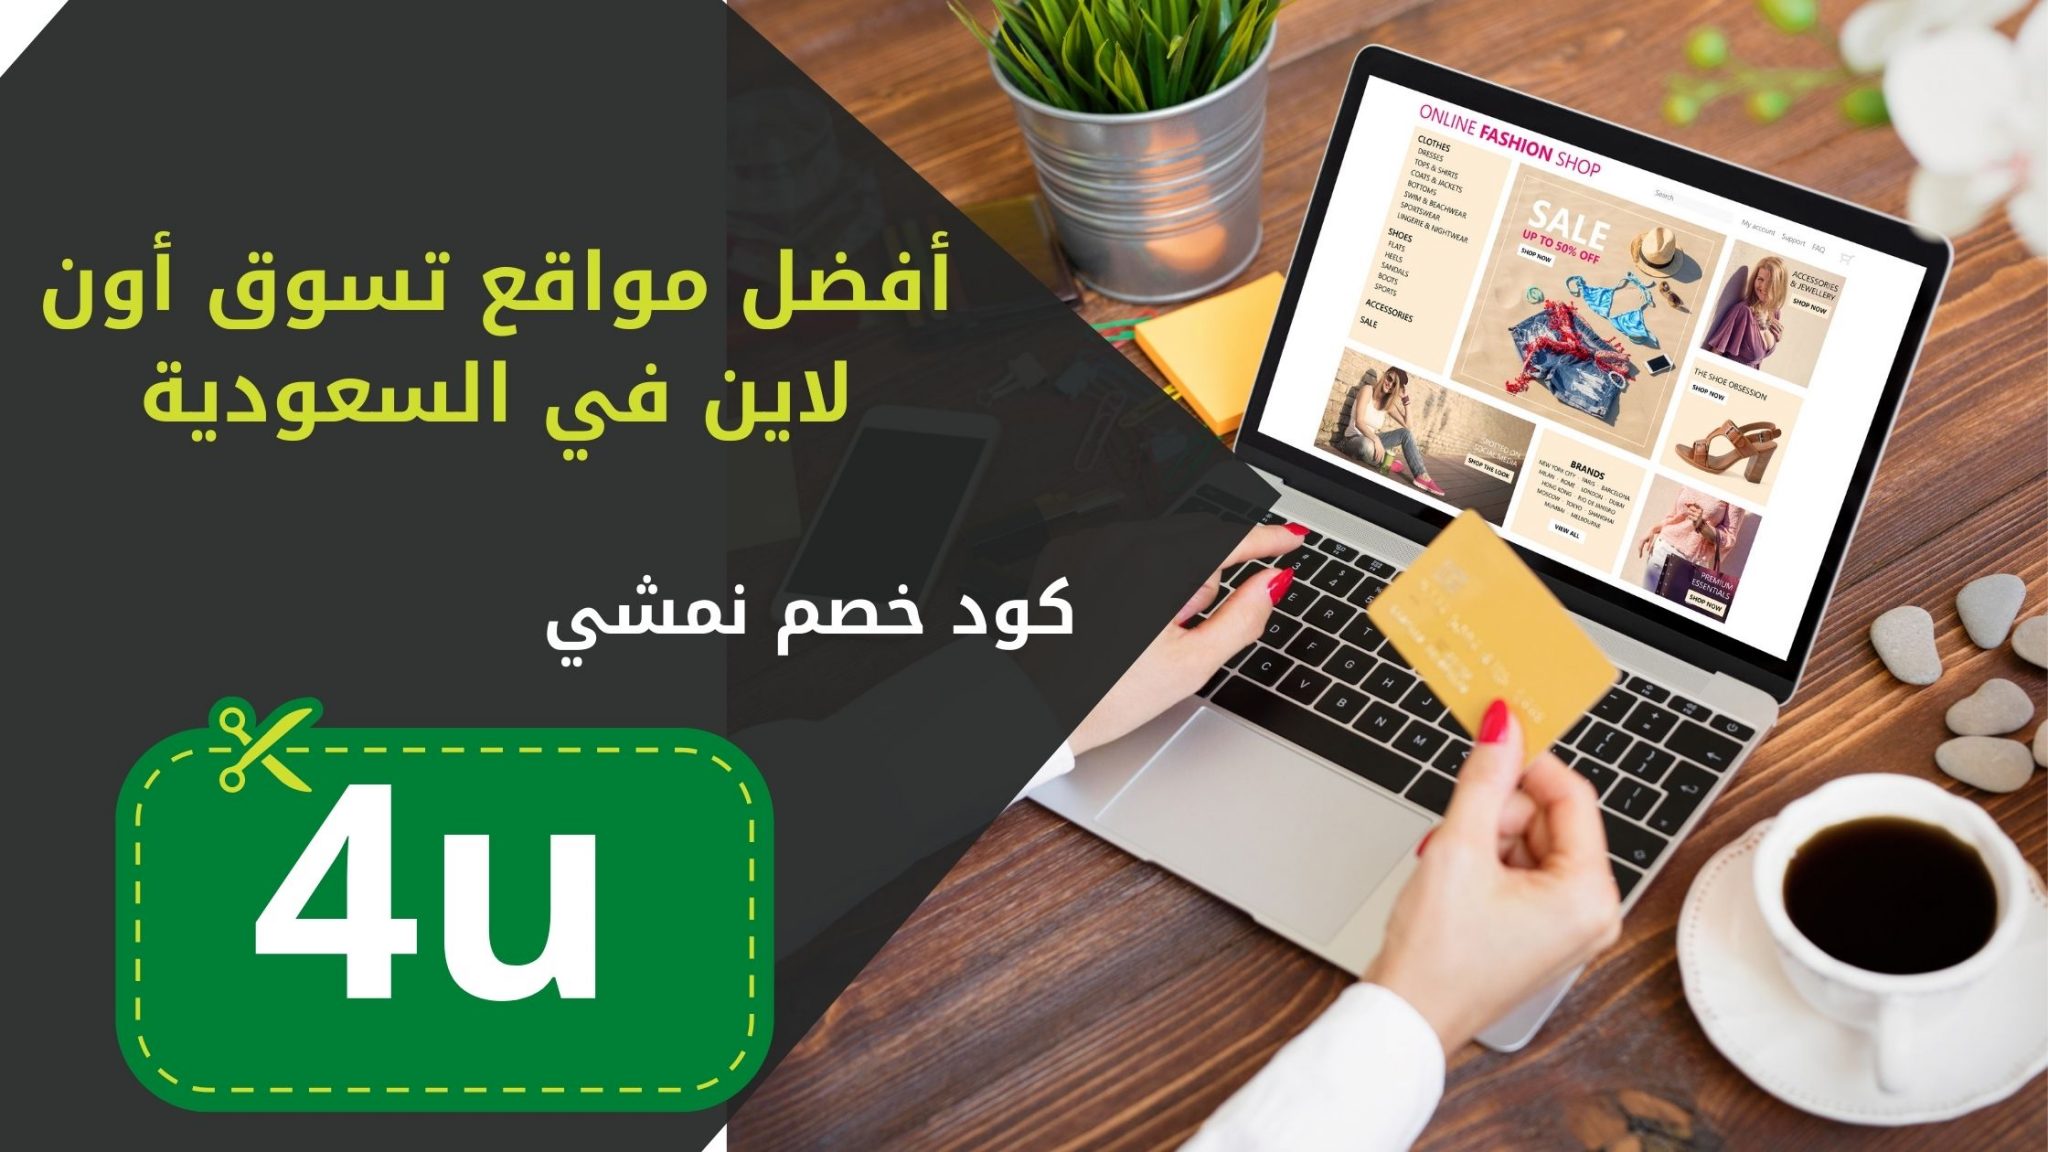 أفضل مواقع تسوق في السعودية اونلاين بتخفيضات ودفع عند الاستلام حتى 75% خصم الأن